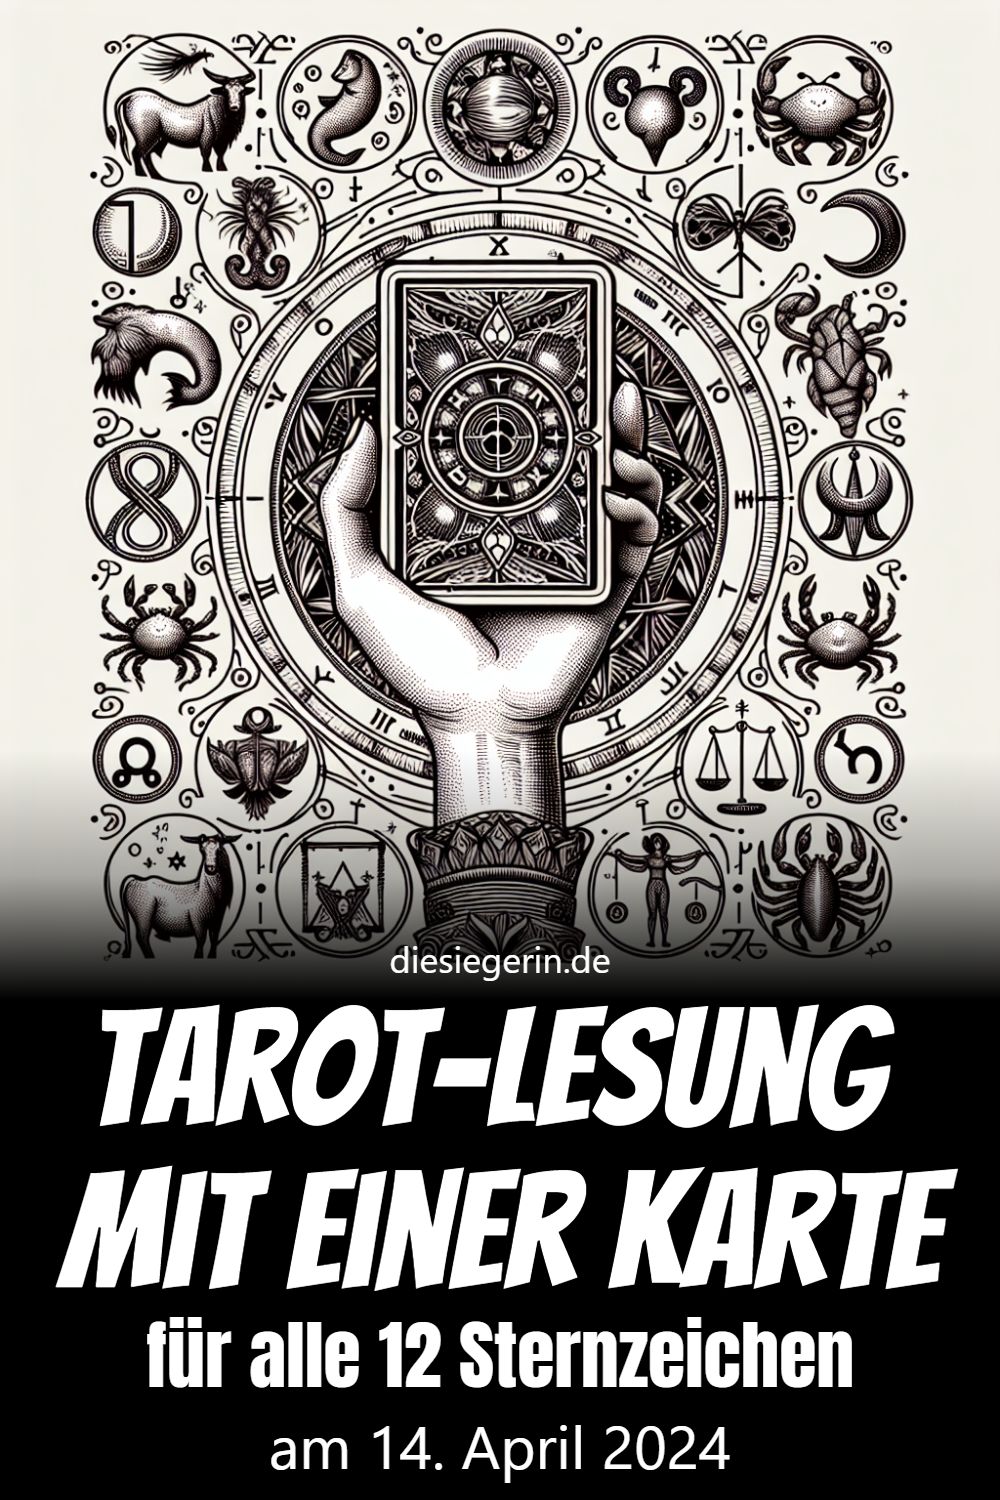 Tarot-Lesung mit einer Karte für alle 12 Sternzeichen am 14. April 2024